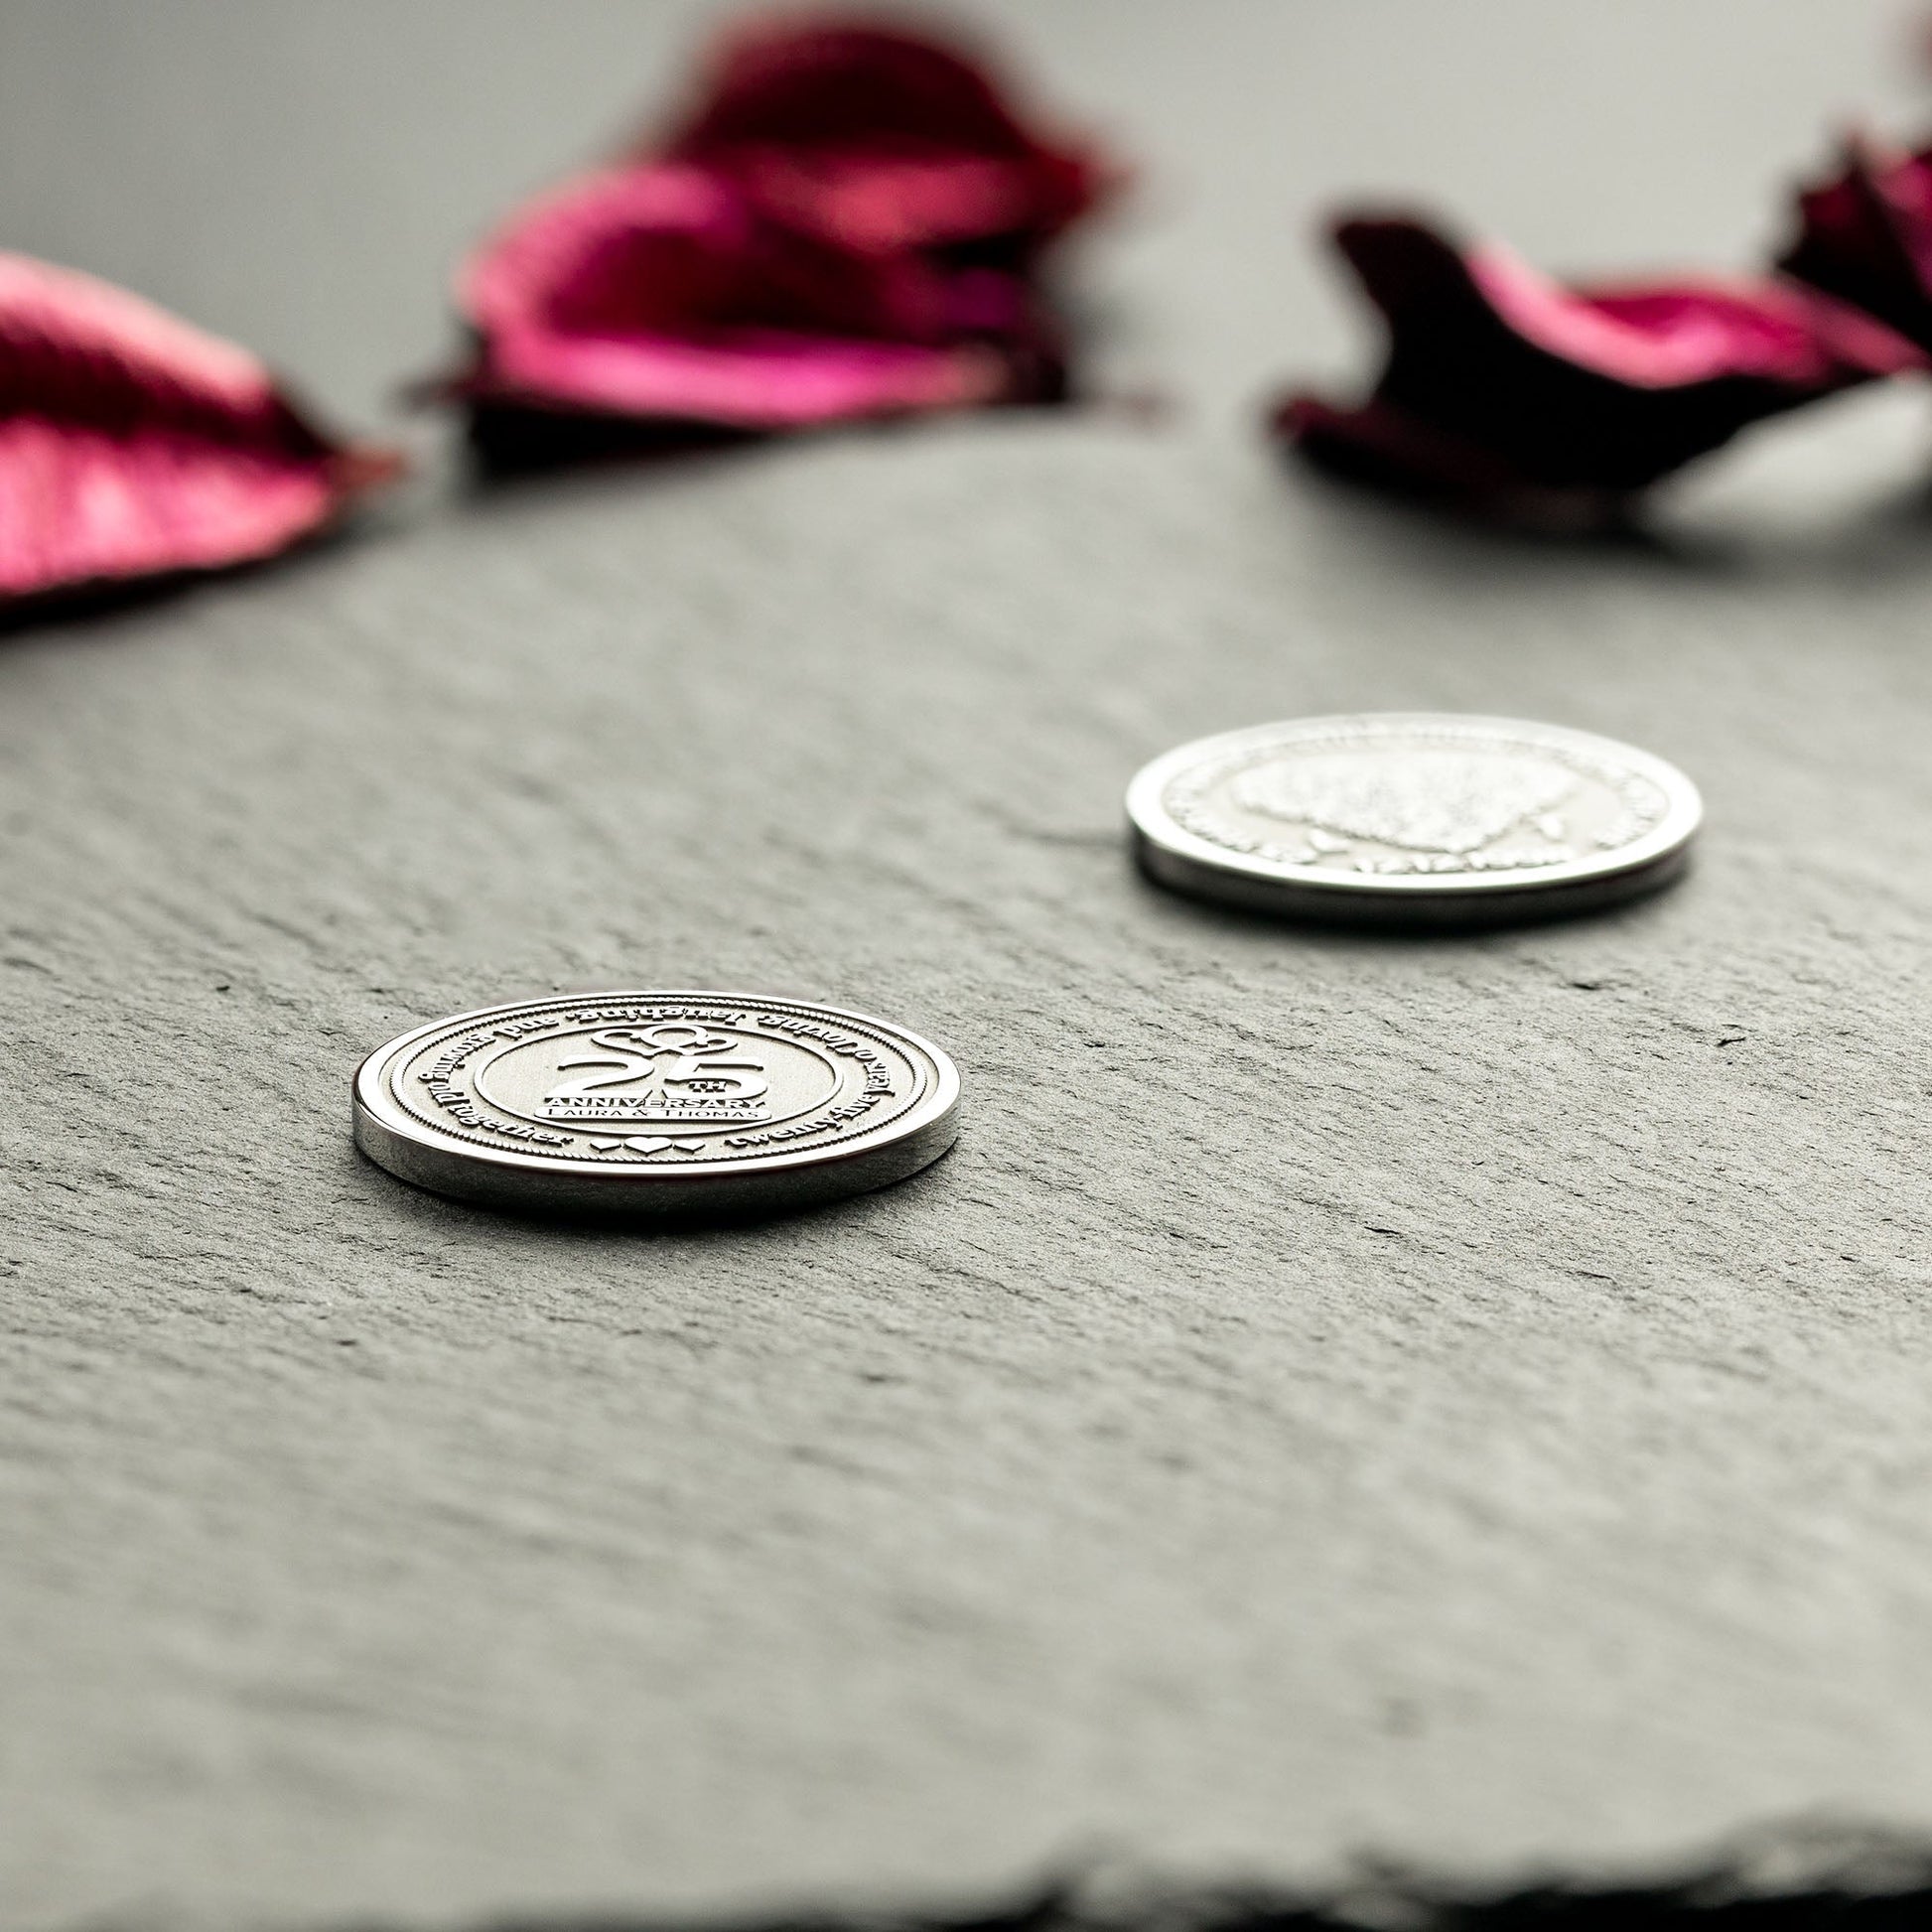 Unique Gift for Silver Anniversary: Our Custom Commemorative Coin - seQua.Shop